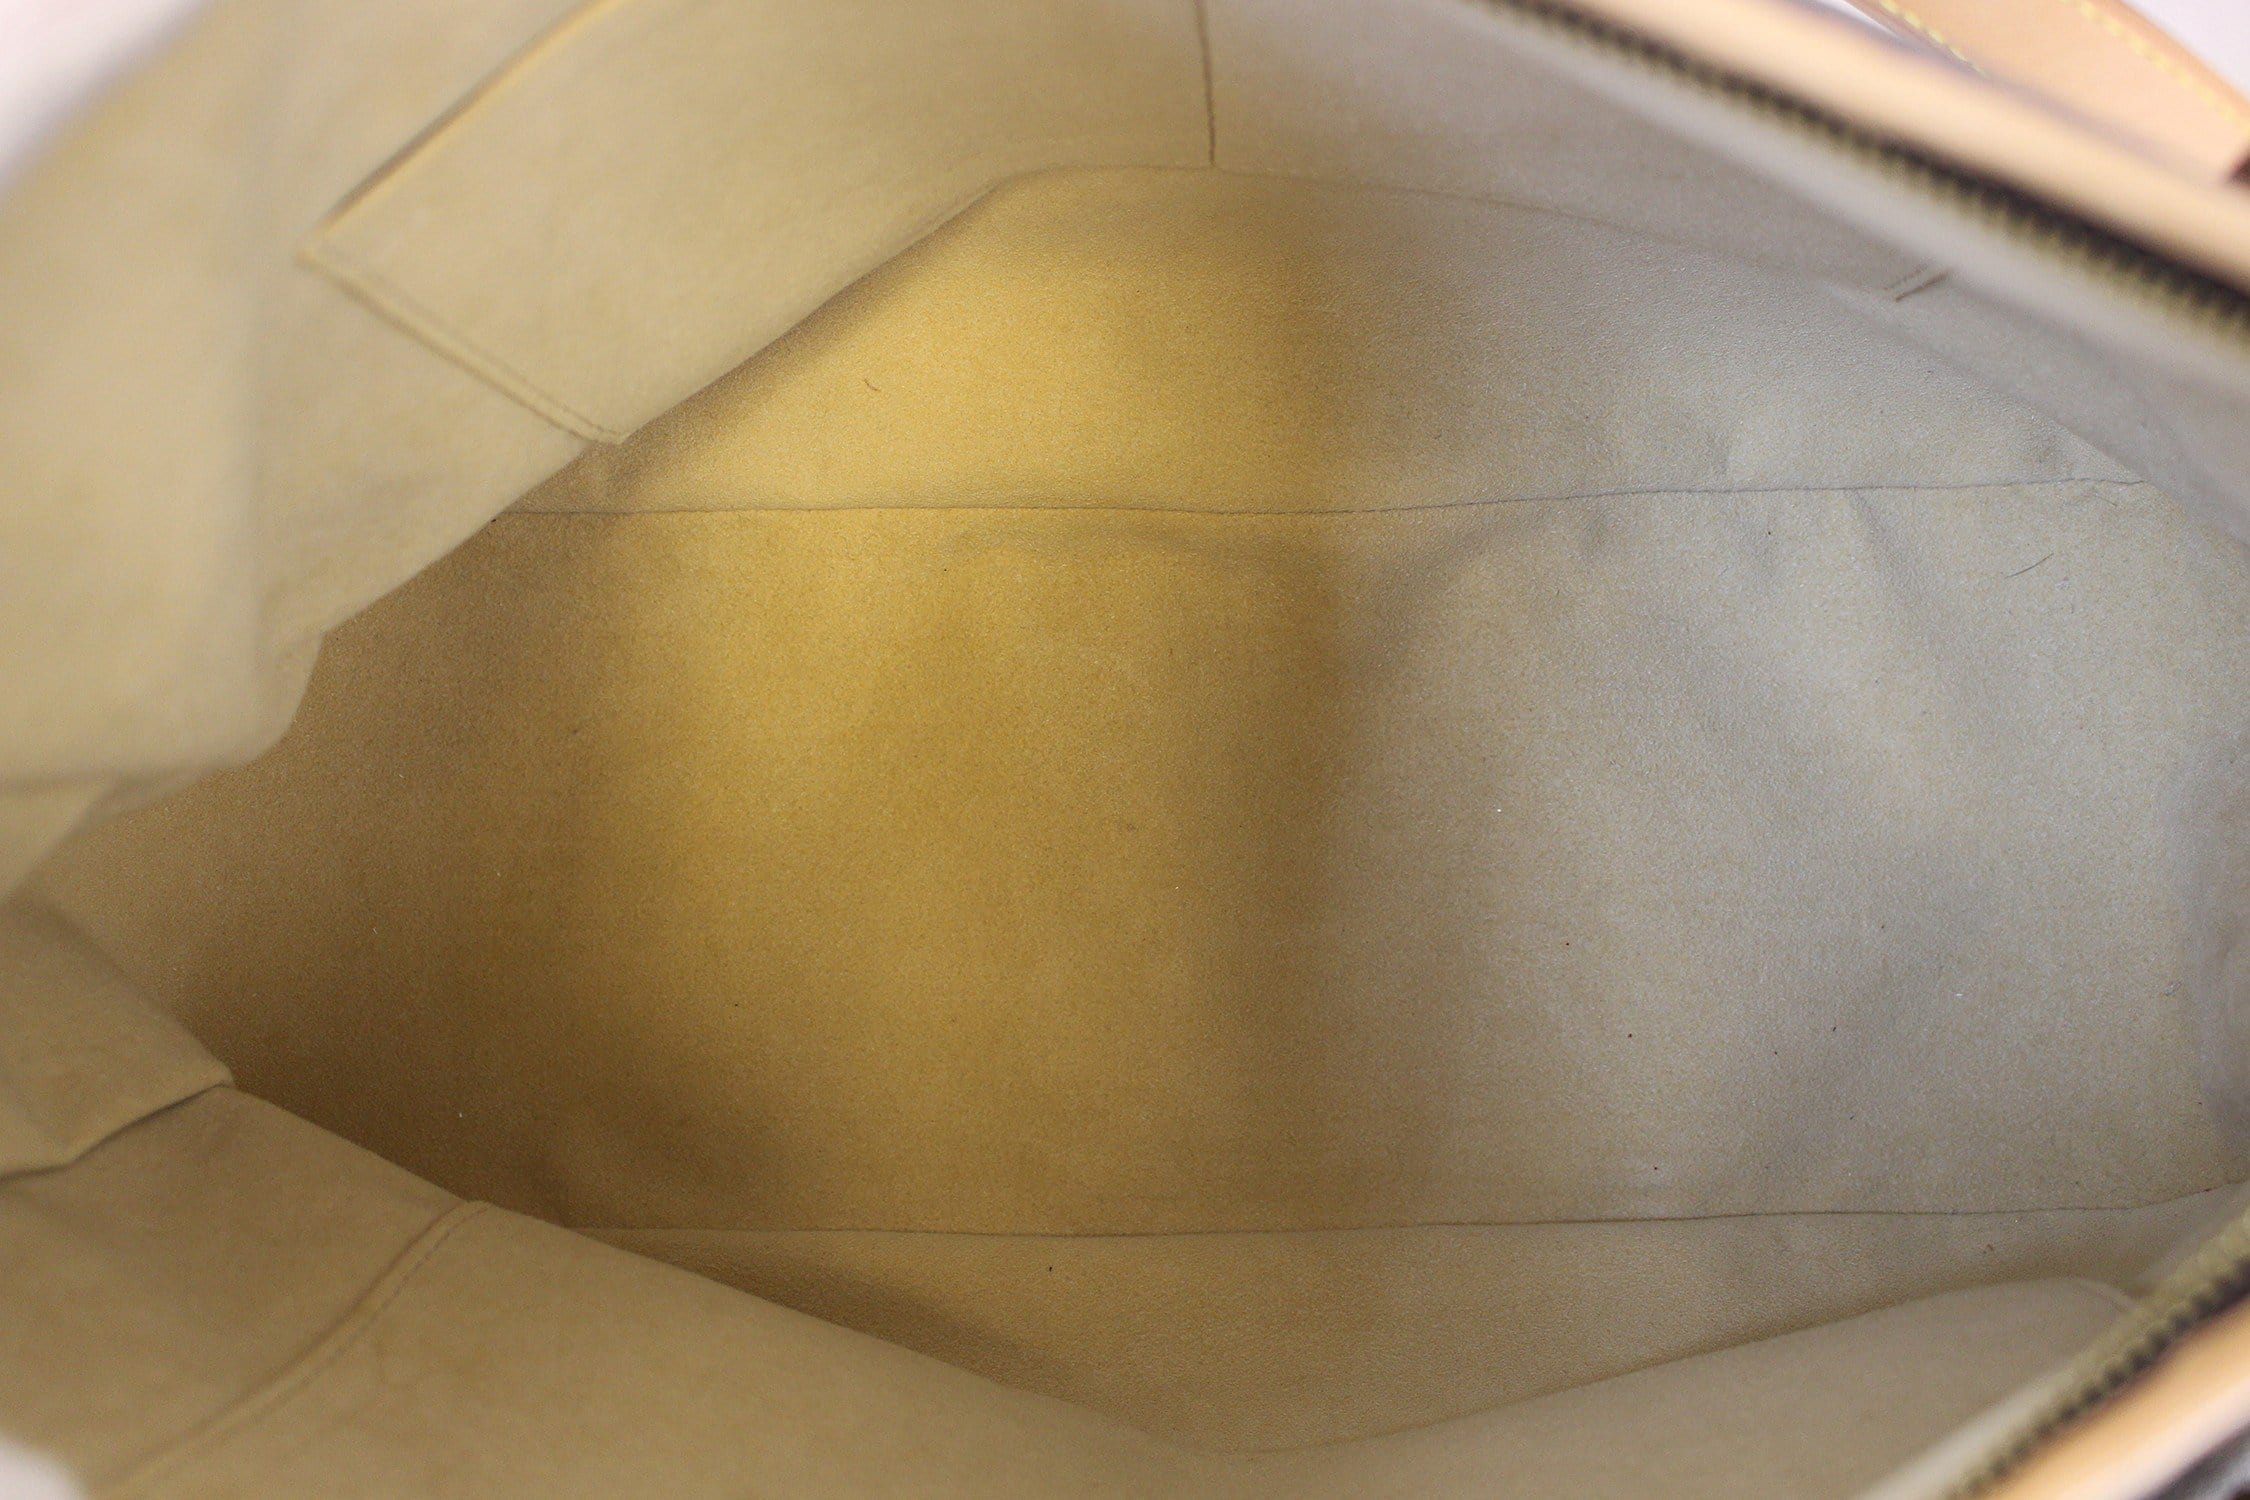 Louis Vuitton Aurore Monogram Canvas Estrela MM NM Bag in 2023